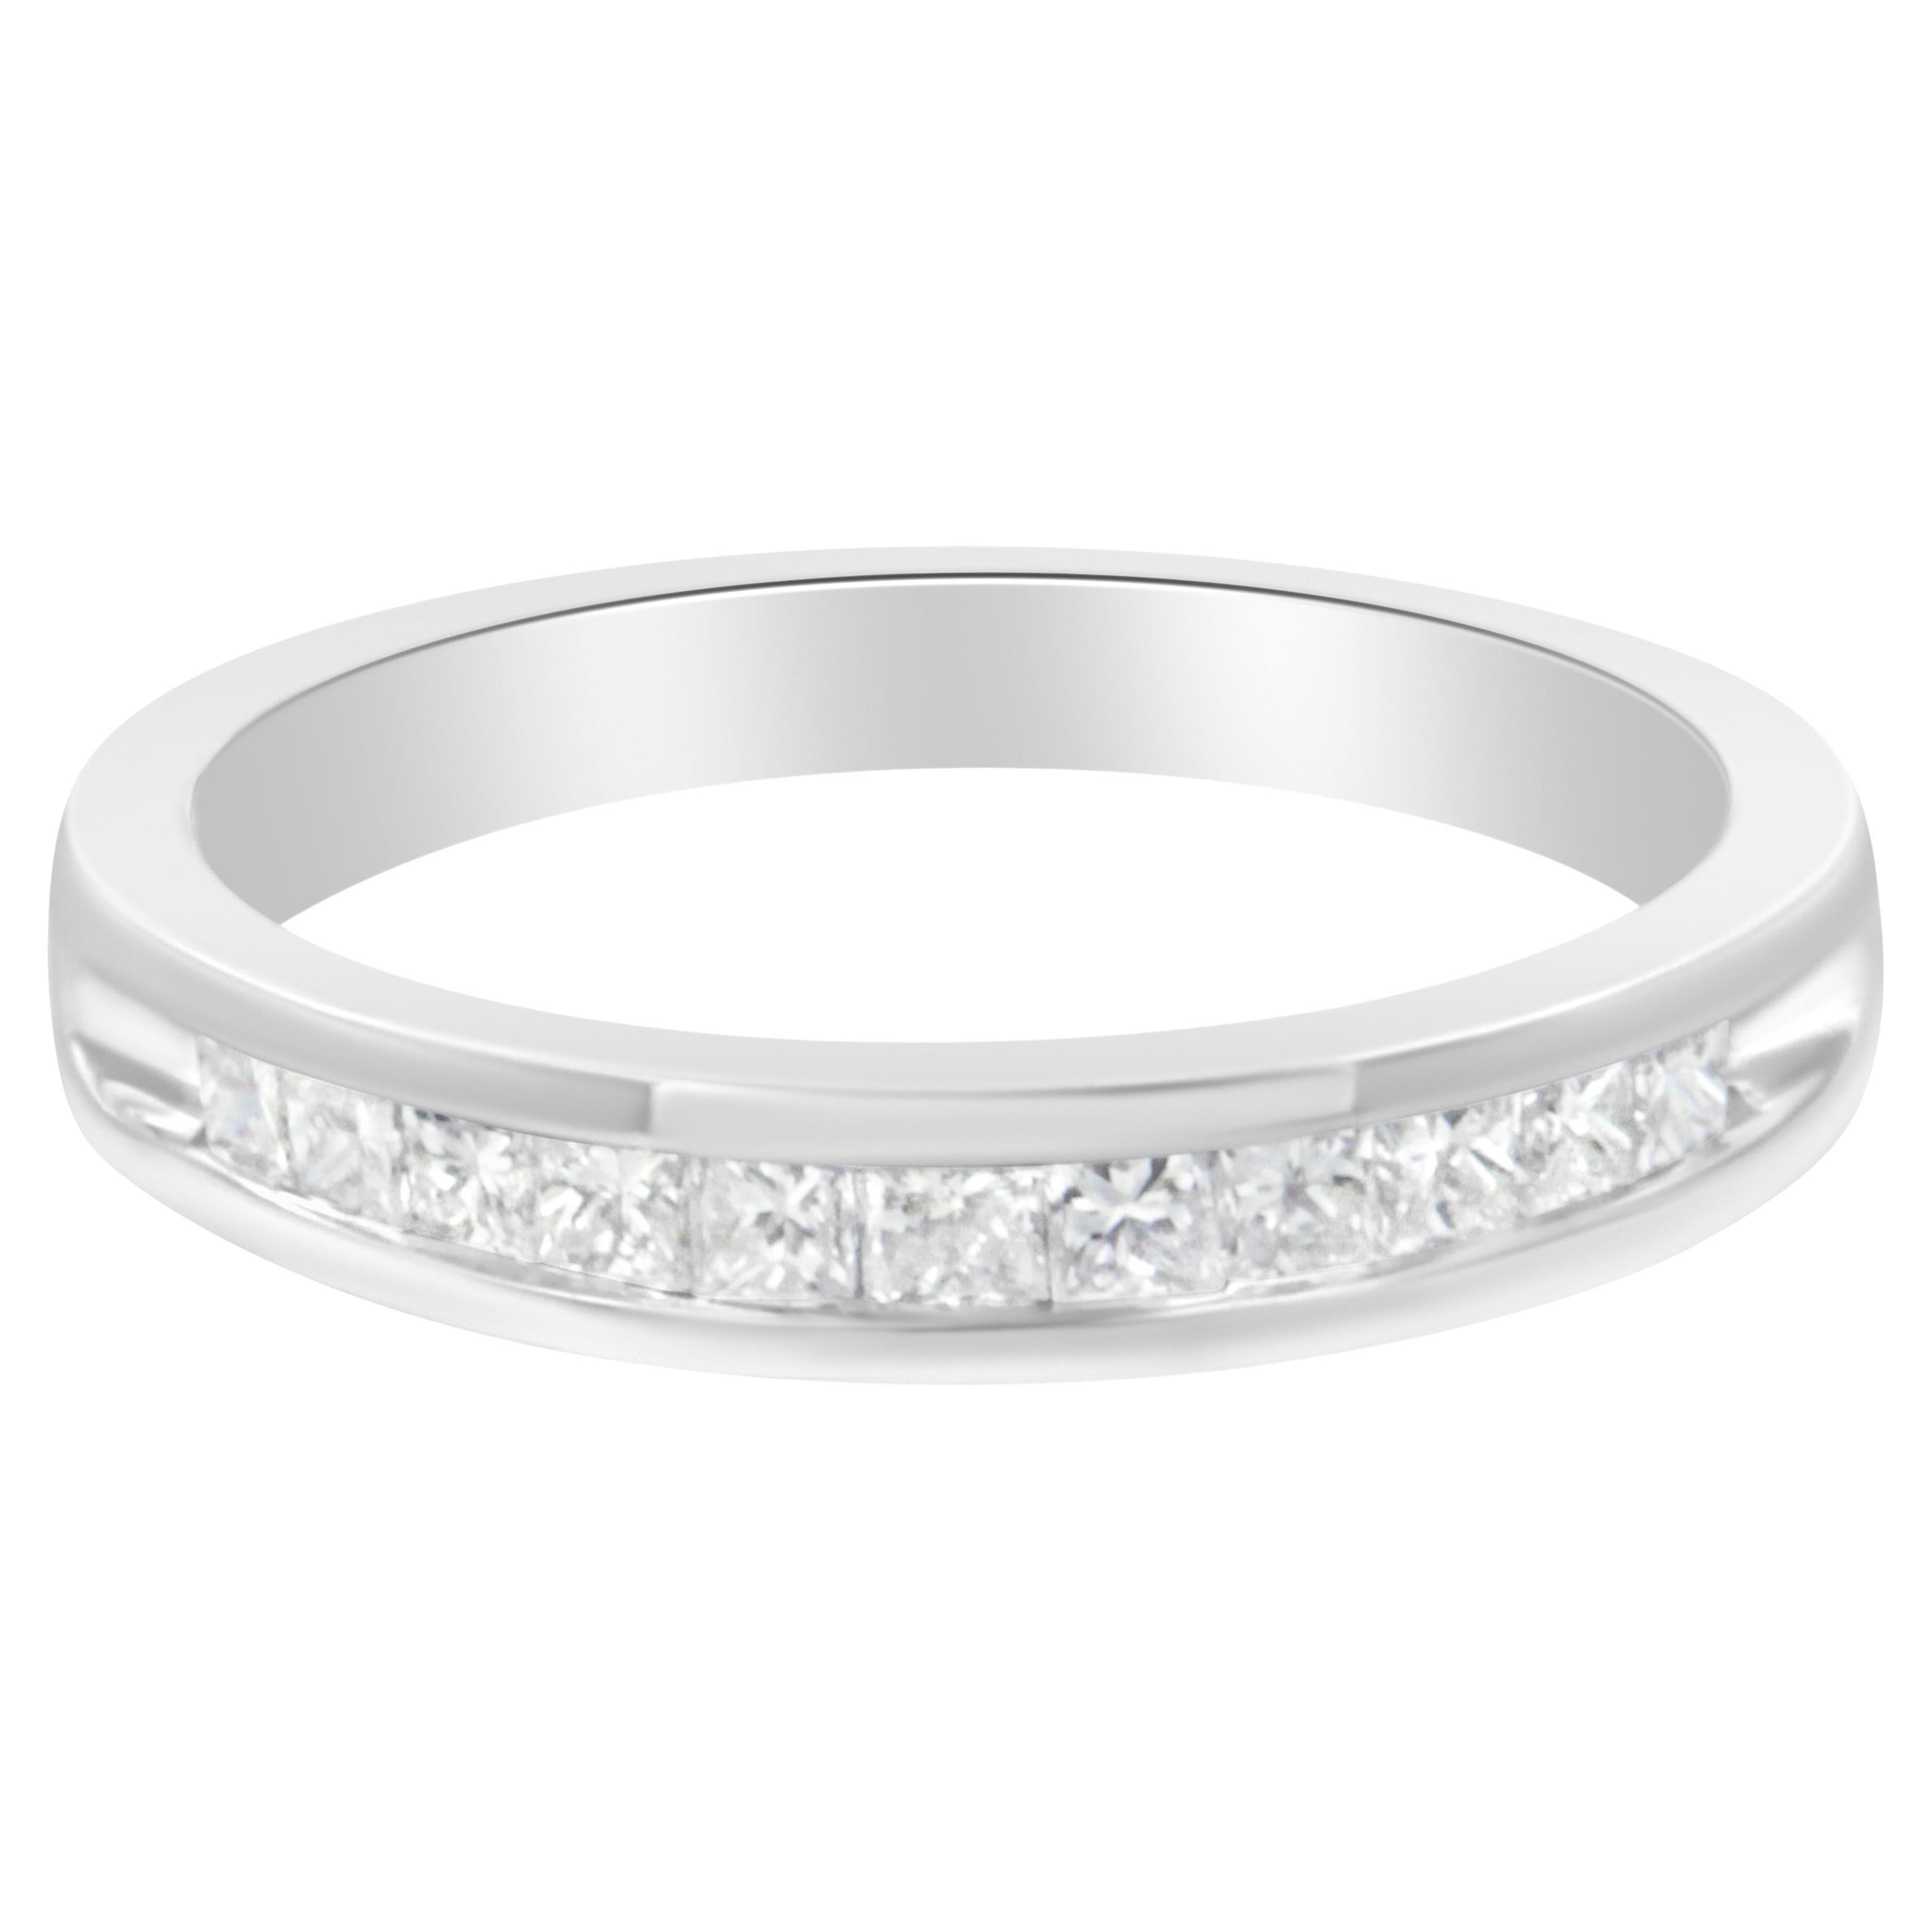 For Sale:  IGI Certified 18k White Gold 1/2 Carat Diamond Wedding Band Ring